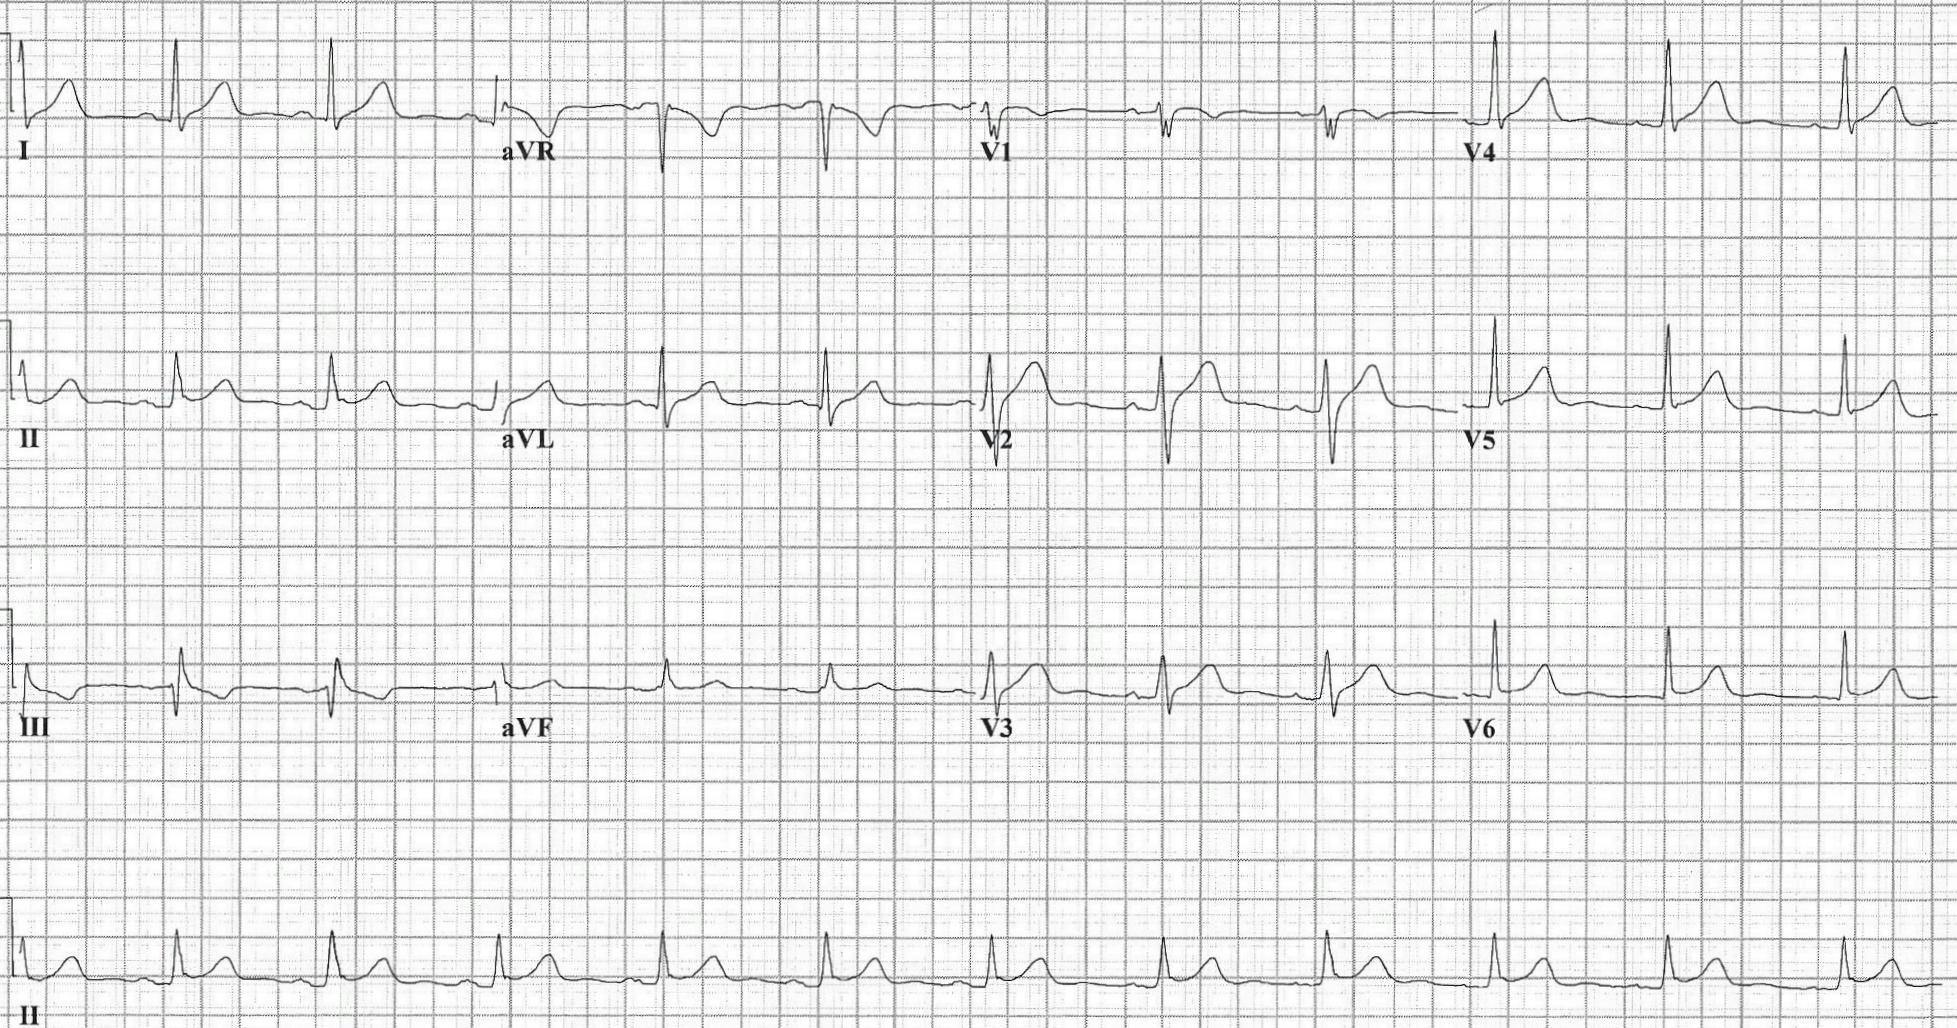 EKG of a patient with epigastric pain